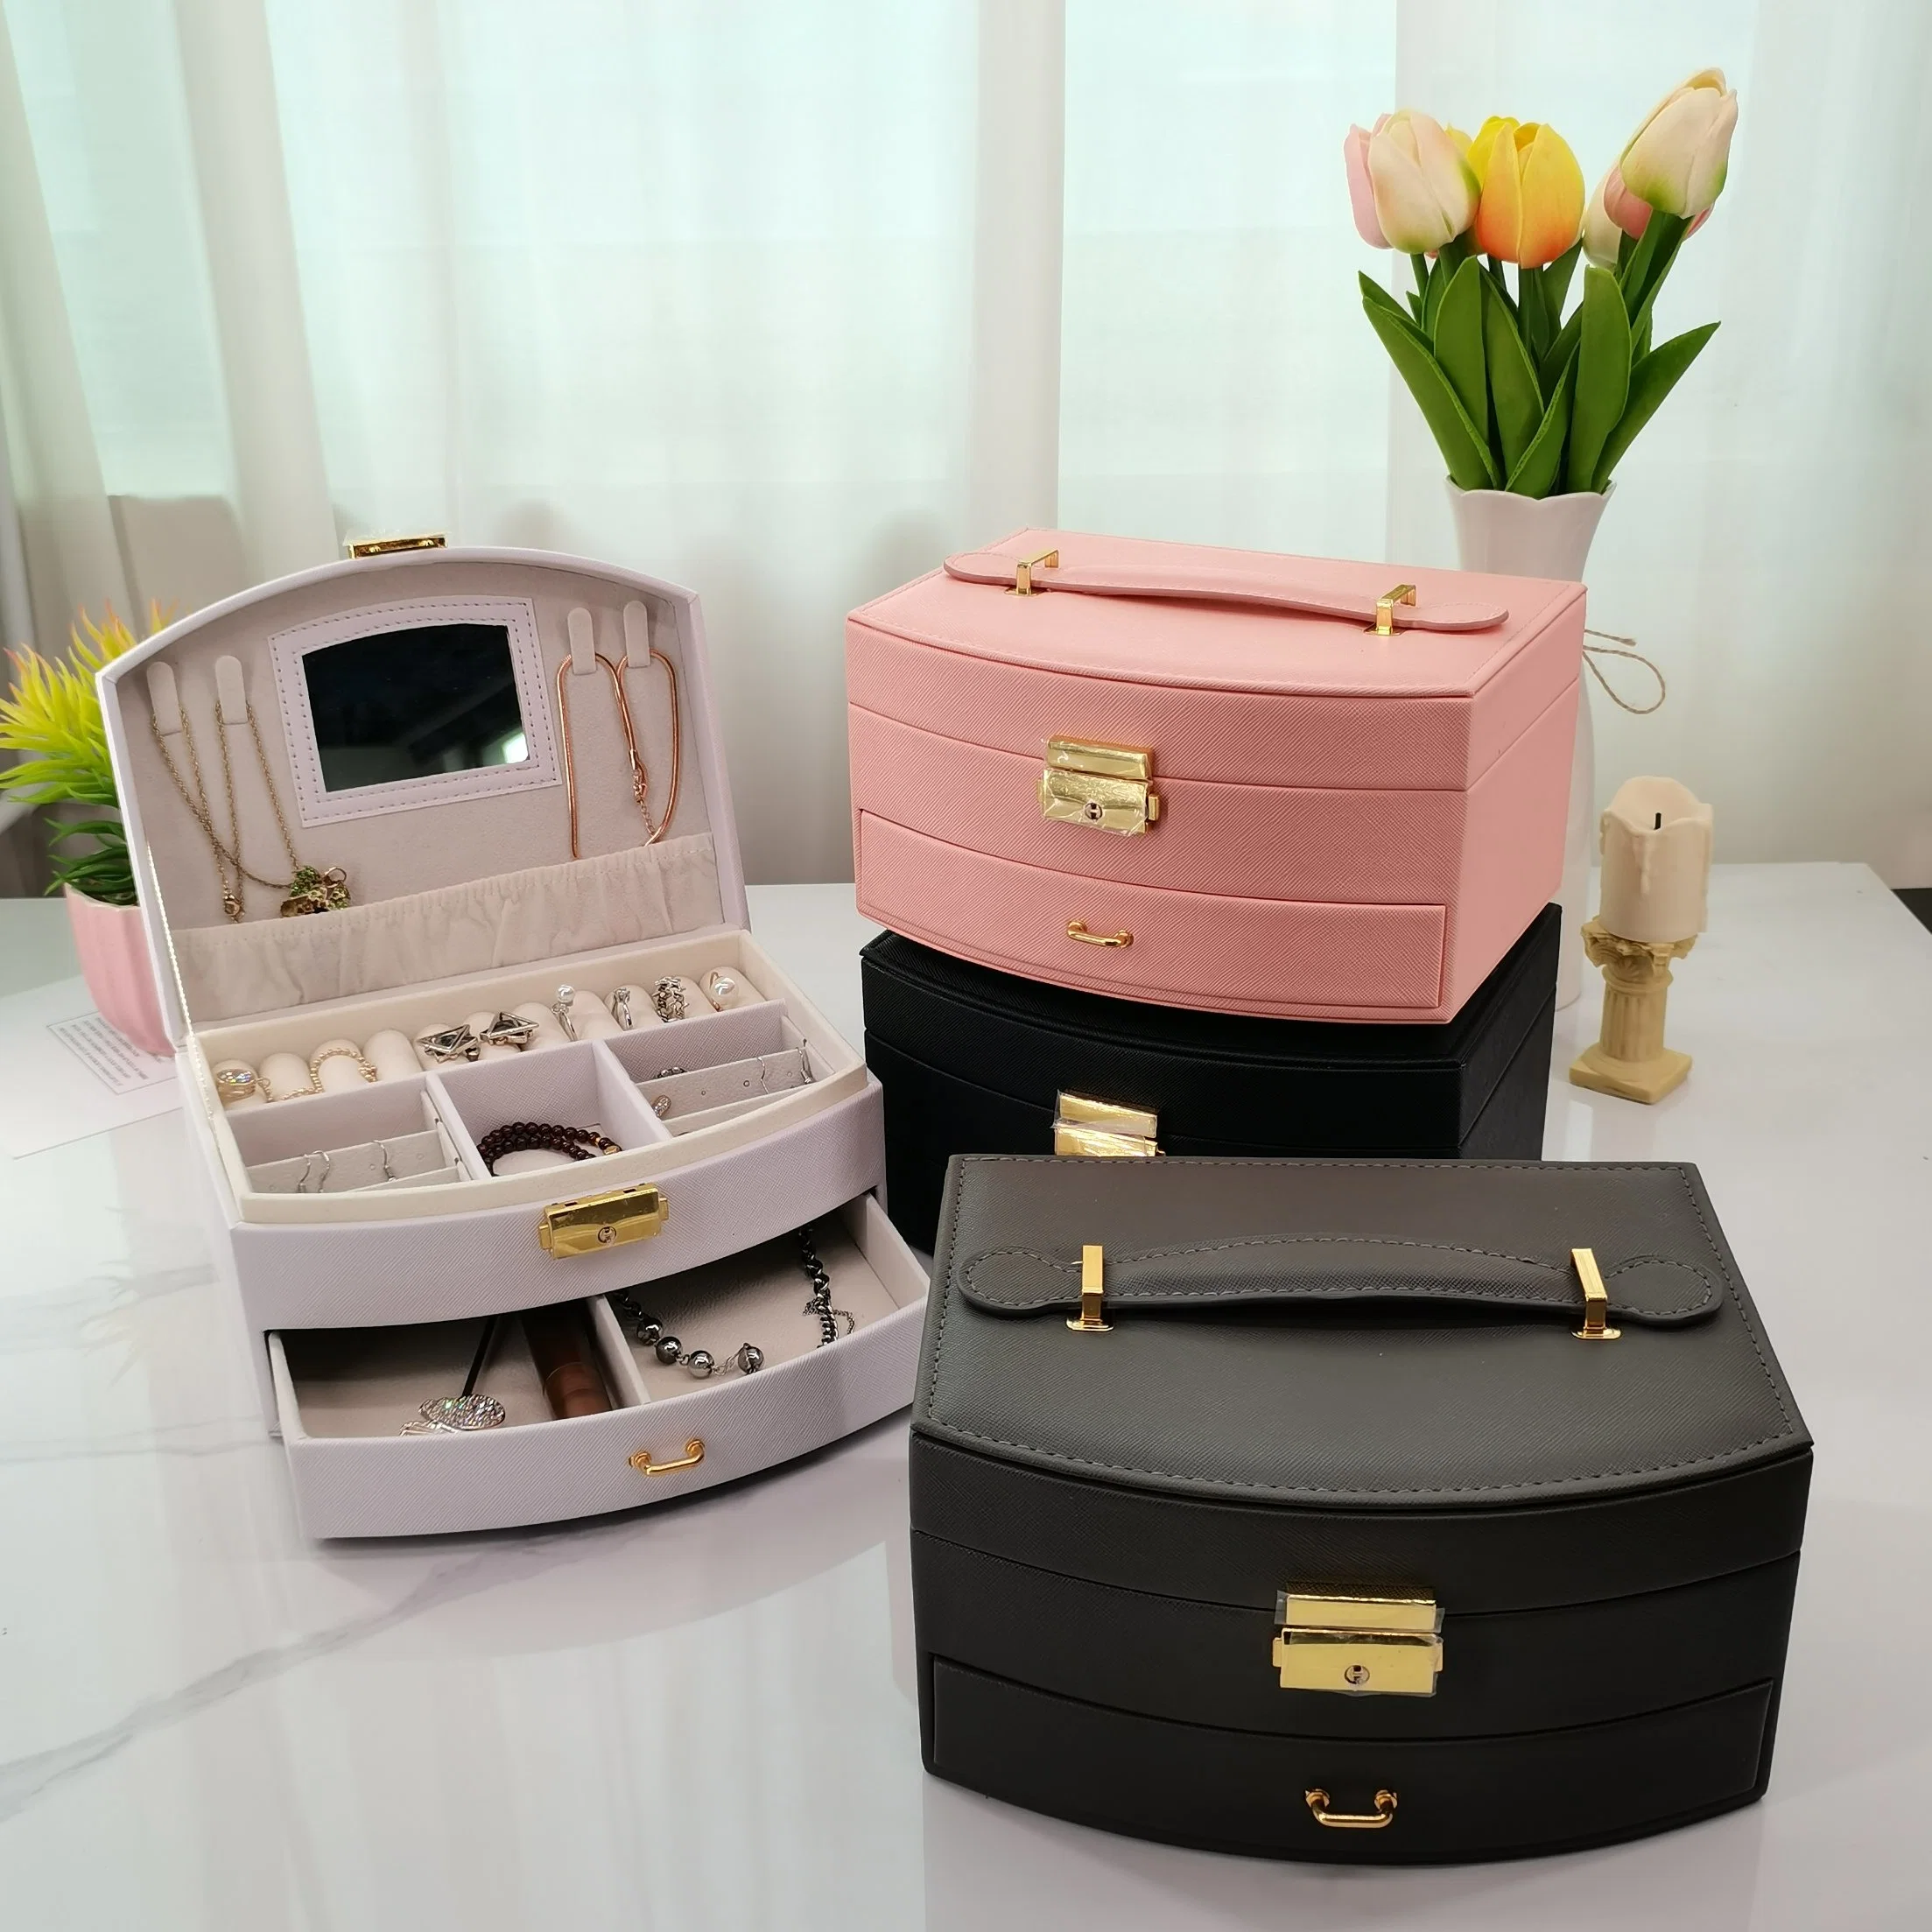 Amazon fabricante tipo gaveta personalizada Brincos de Princesa caixa de jóias portáteis Caixa de relógio com caixa de armazenamento para jóias com anel de colar